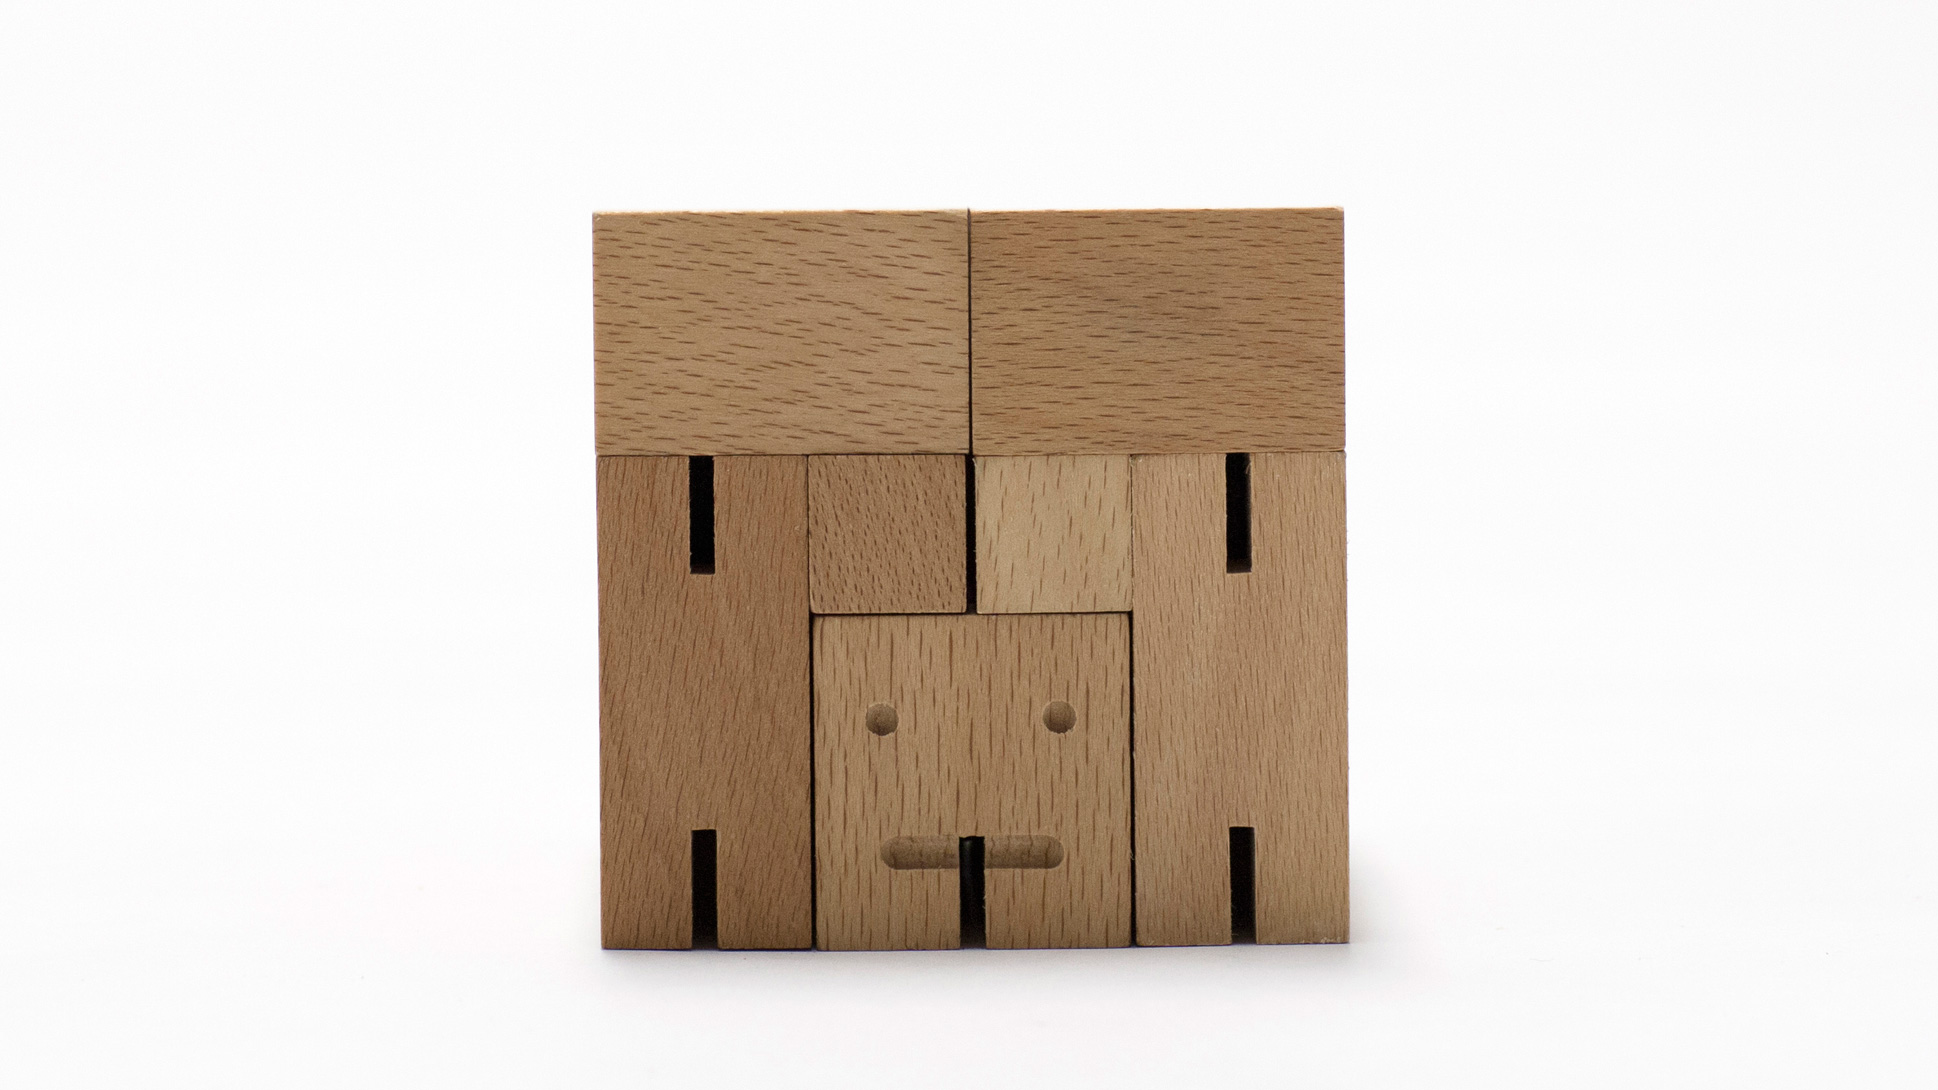 Cubebot by David Weeks